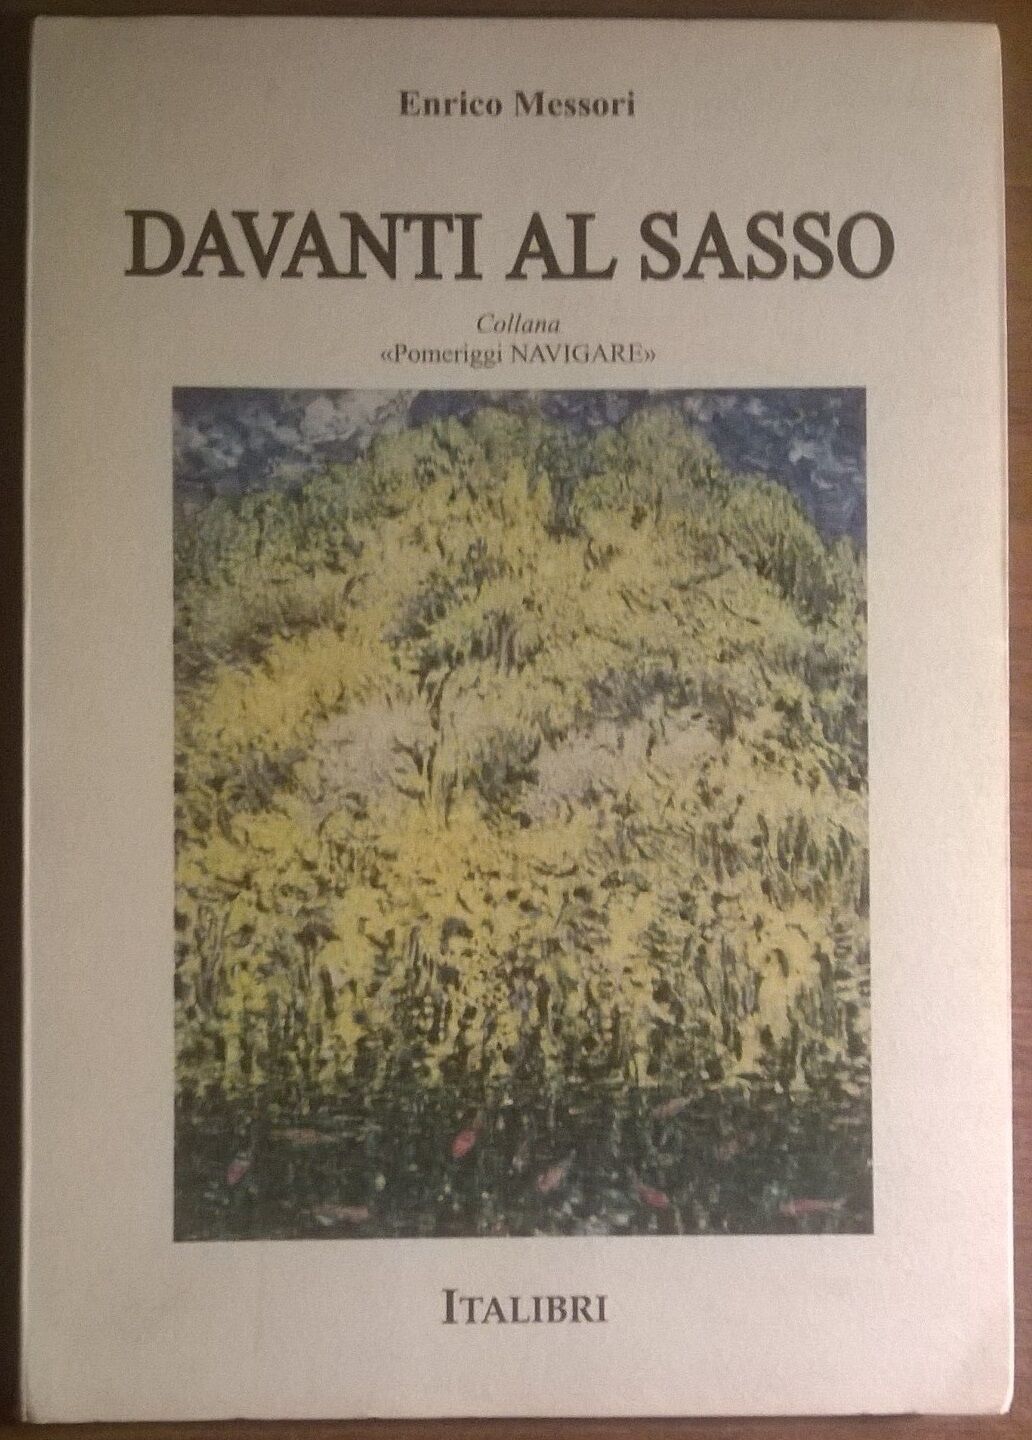 Davanti al sasso - Enrico Messori - 1994, Italibri  - L 